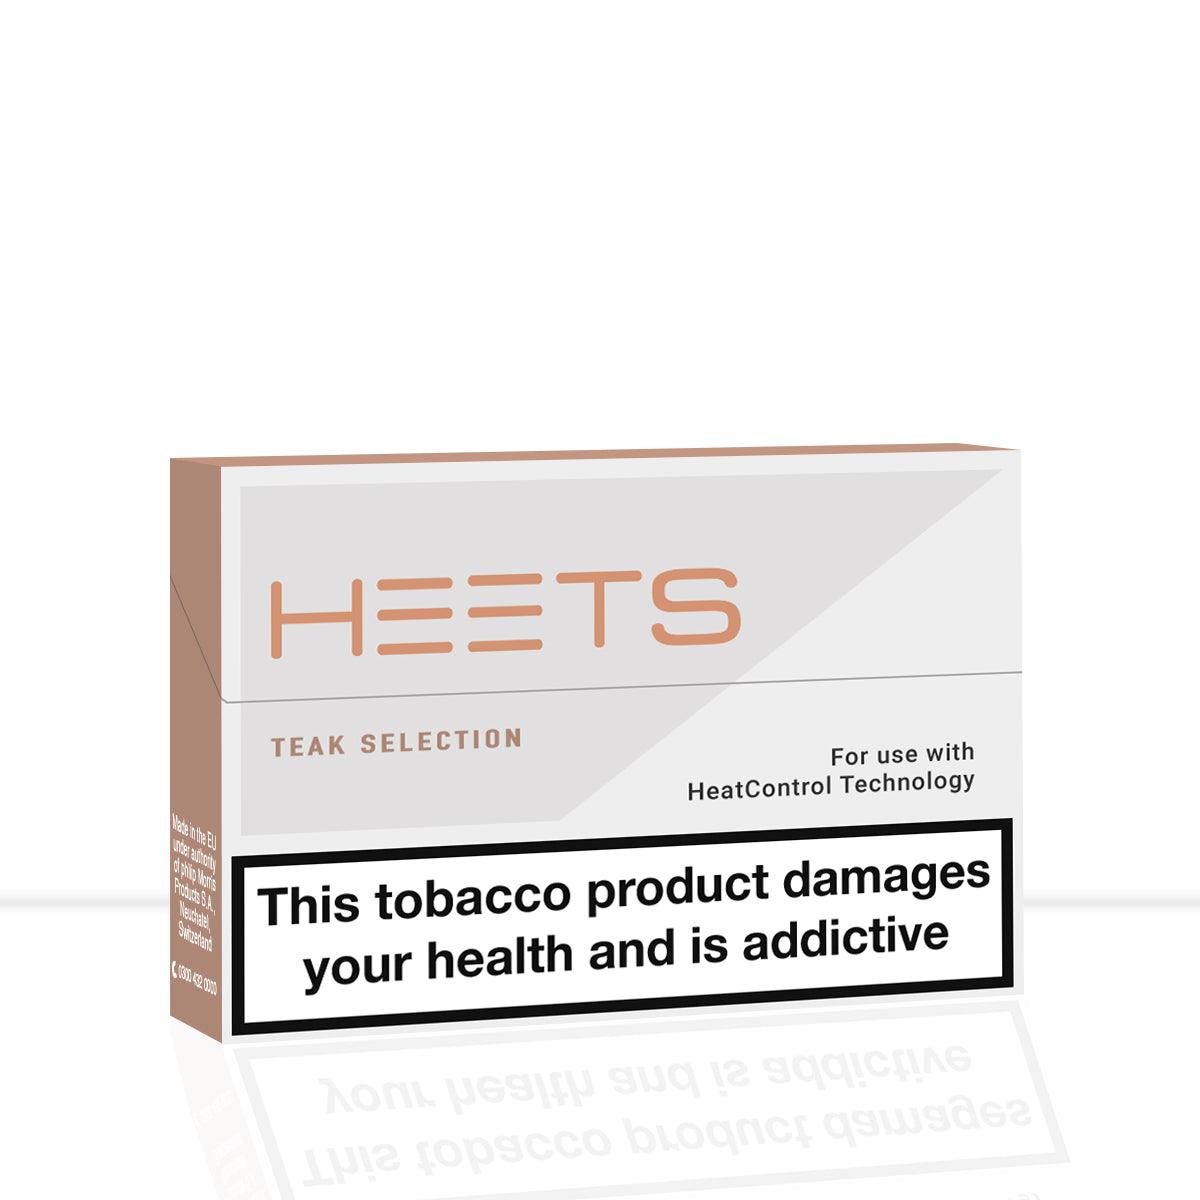 Teak Heets IQOS - Teak Heets IQOS - Heated Tobacco